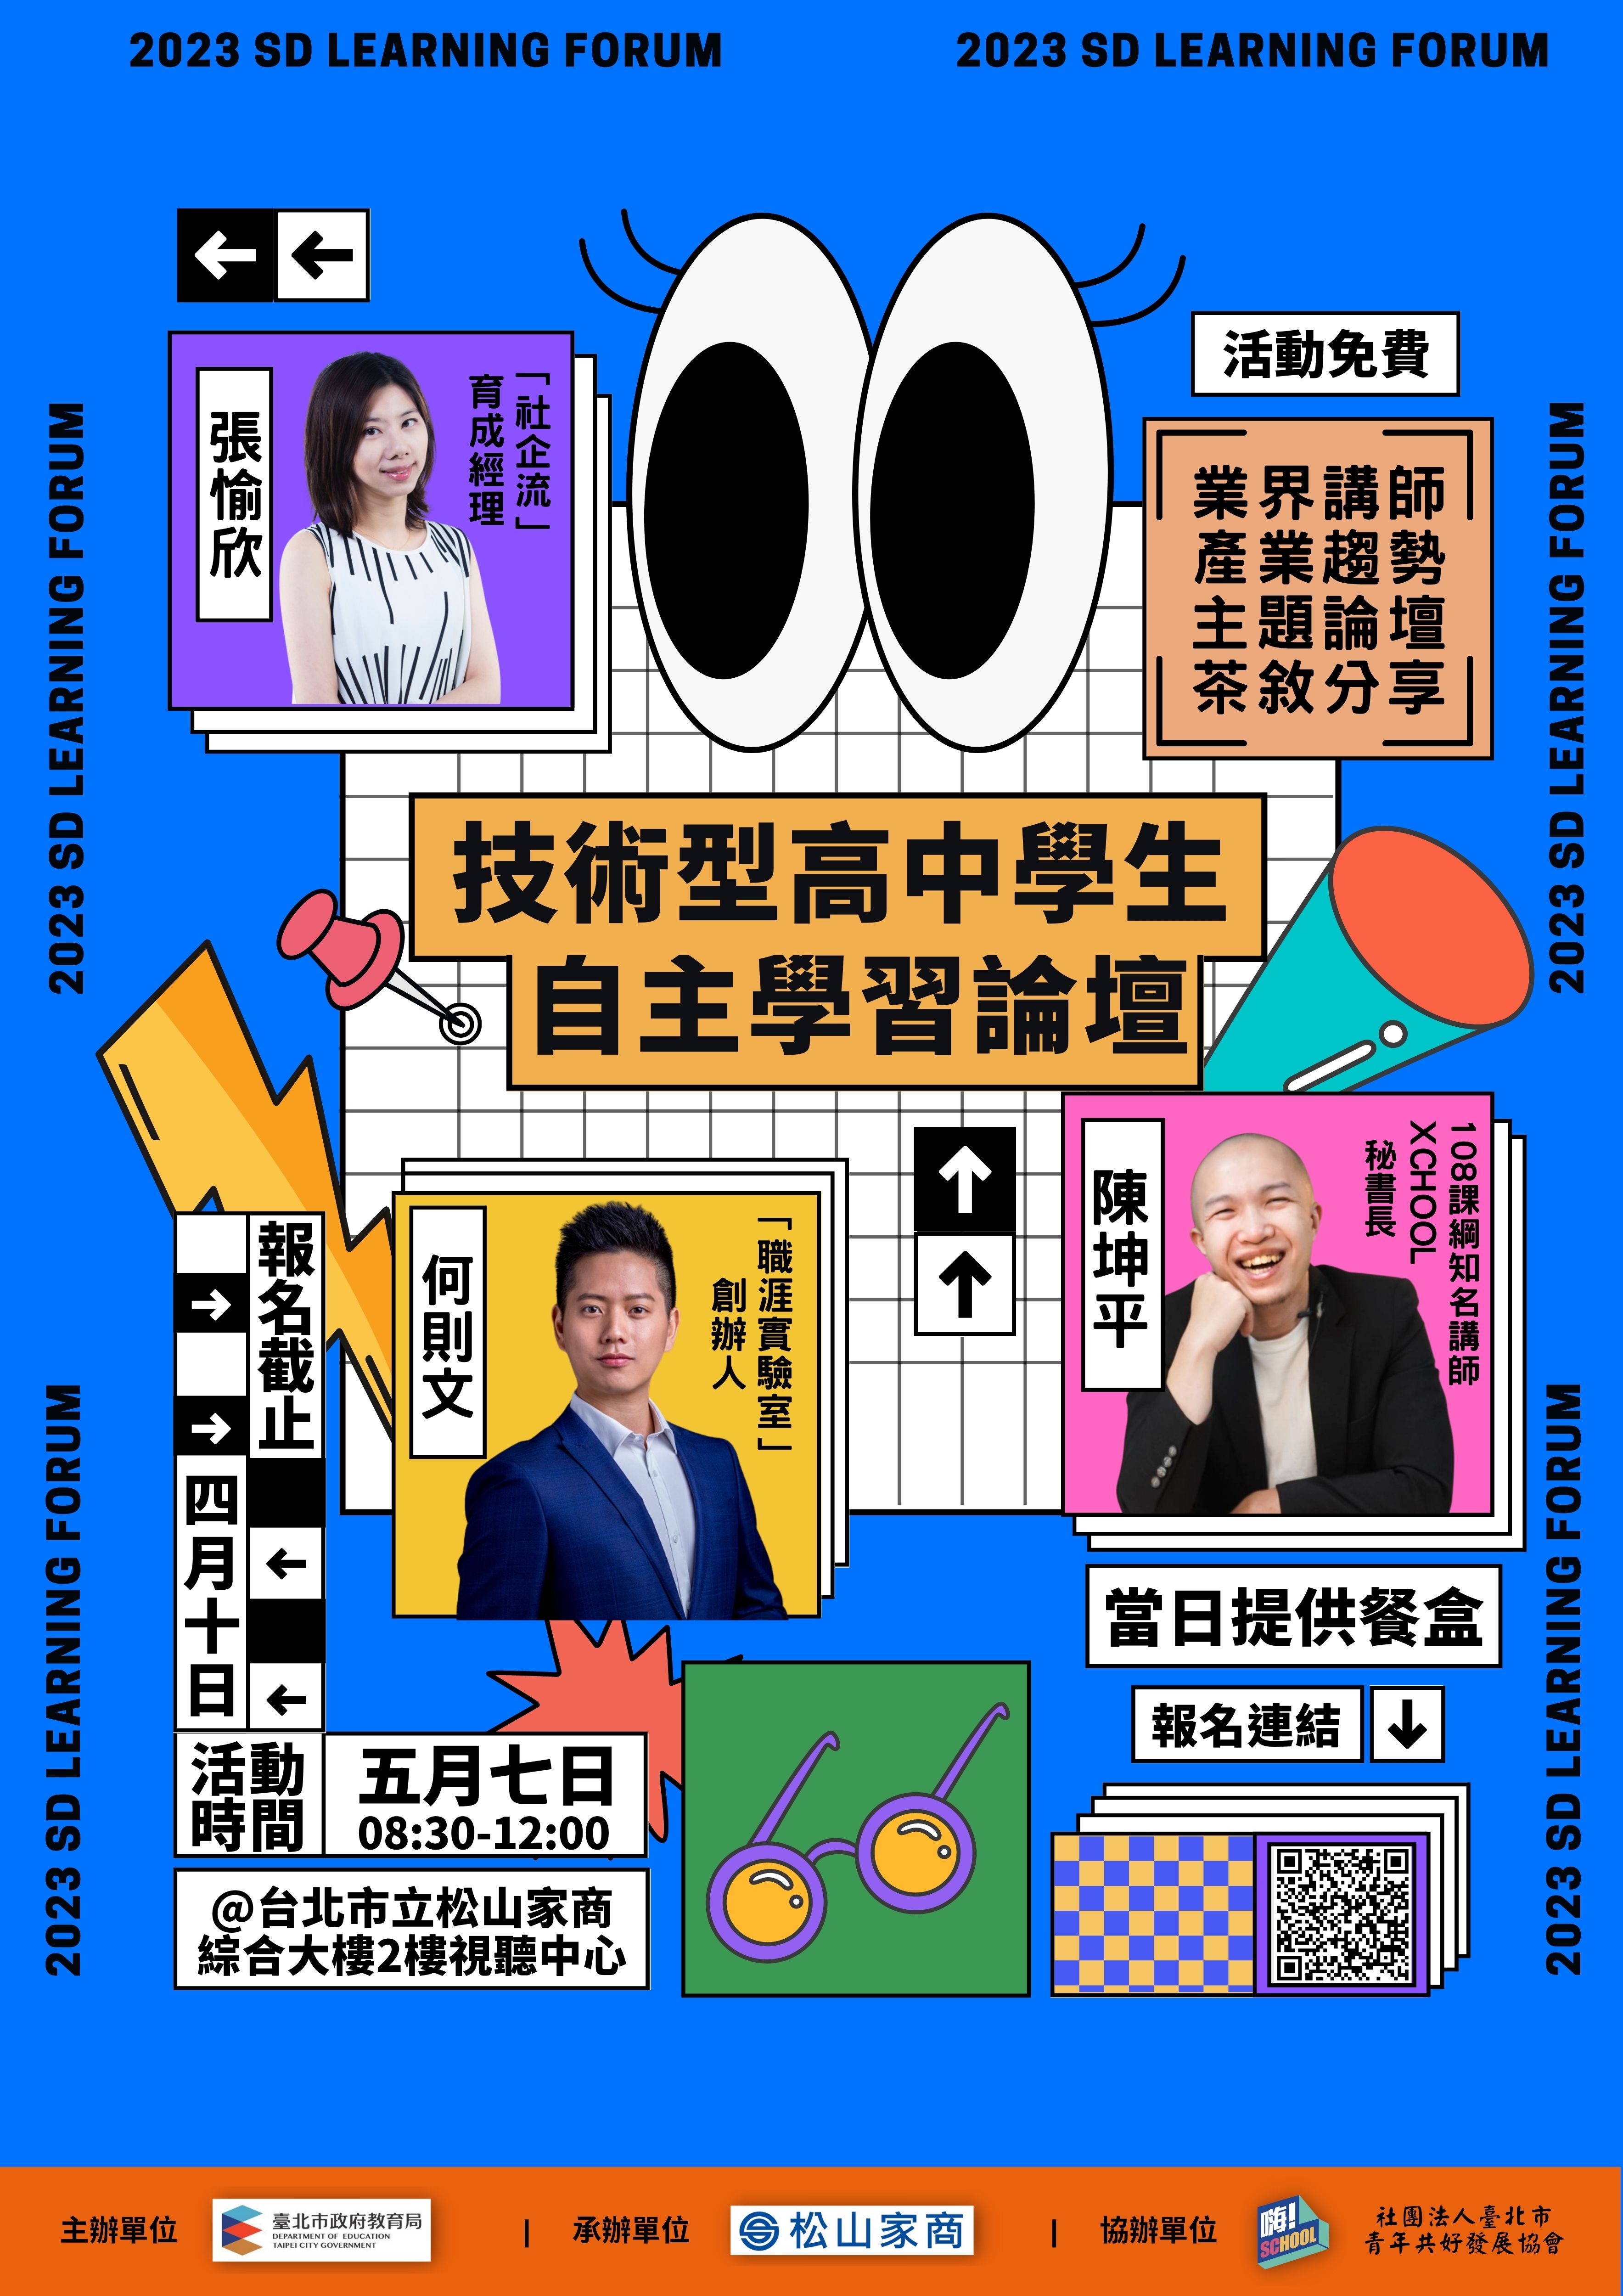 松山家商舉辦「臺北市112年度技術型高中學生自主學習論壇」實施計畫